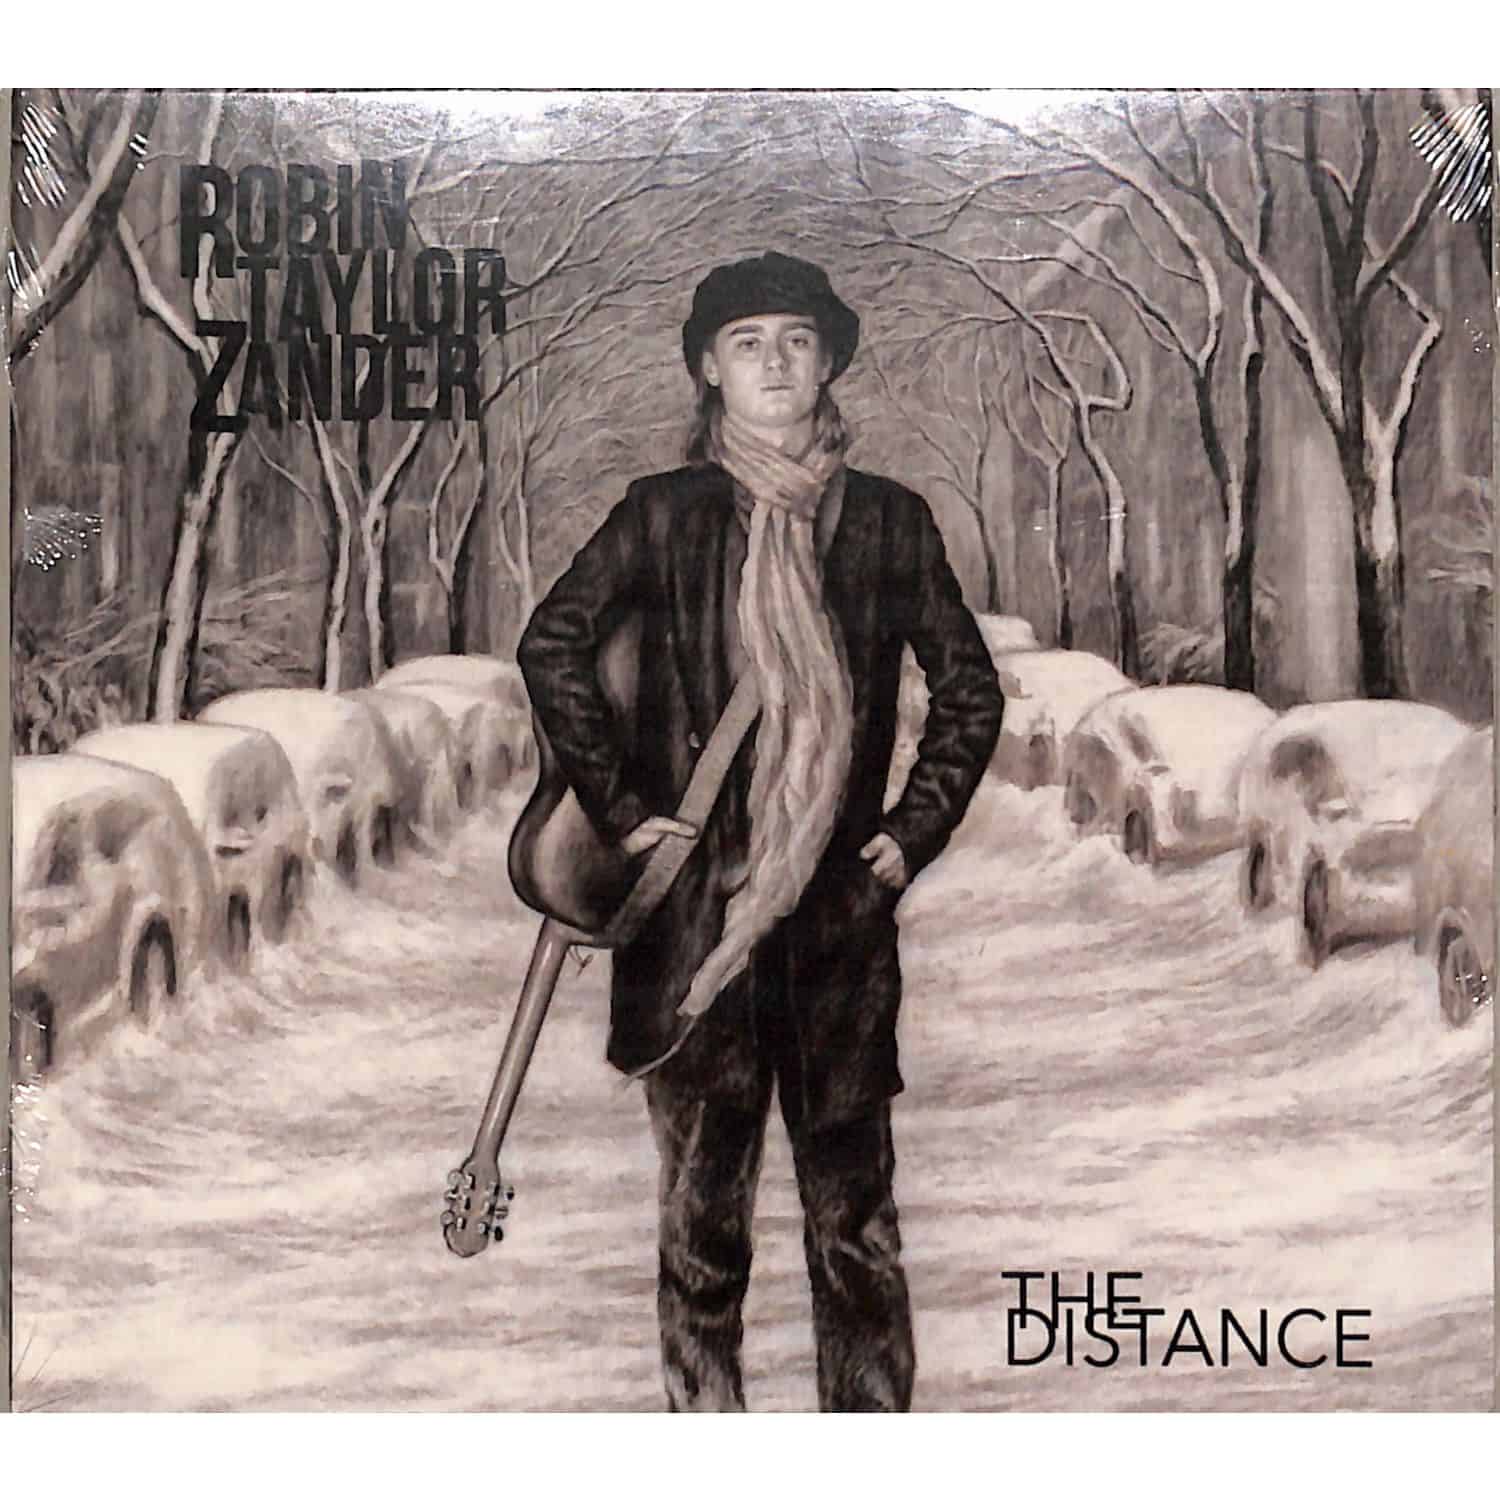 Robin Taylor Zander - DISTANCE 